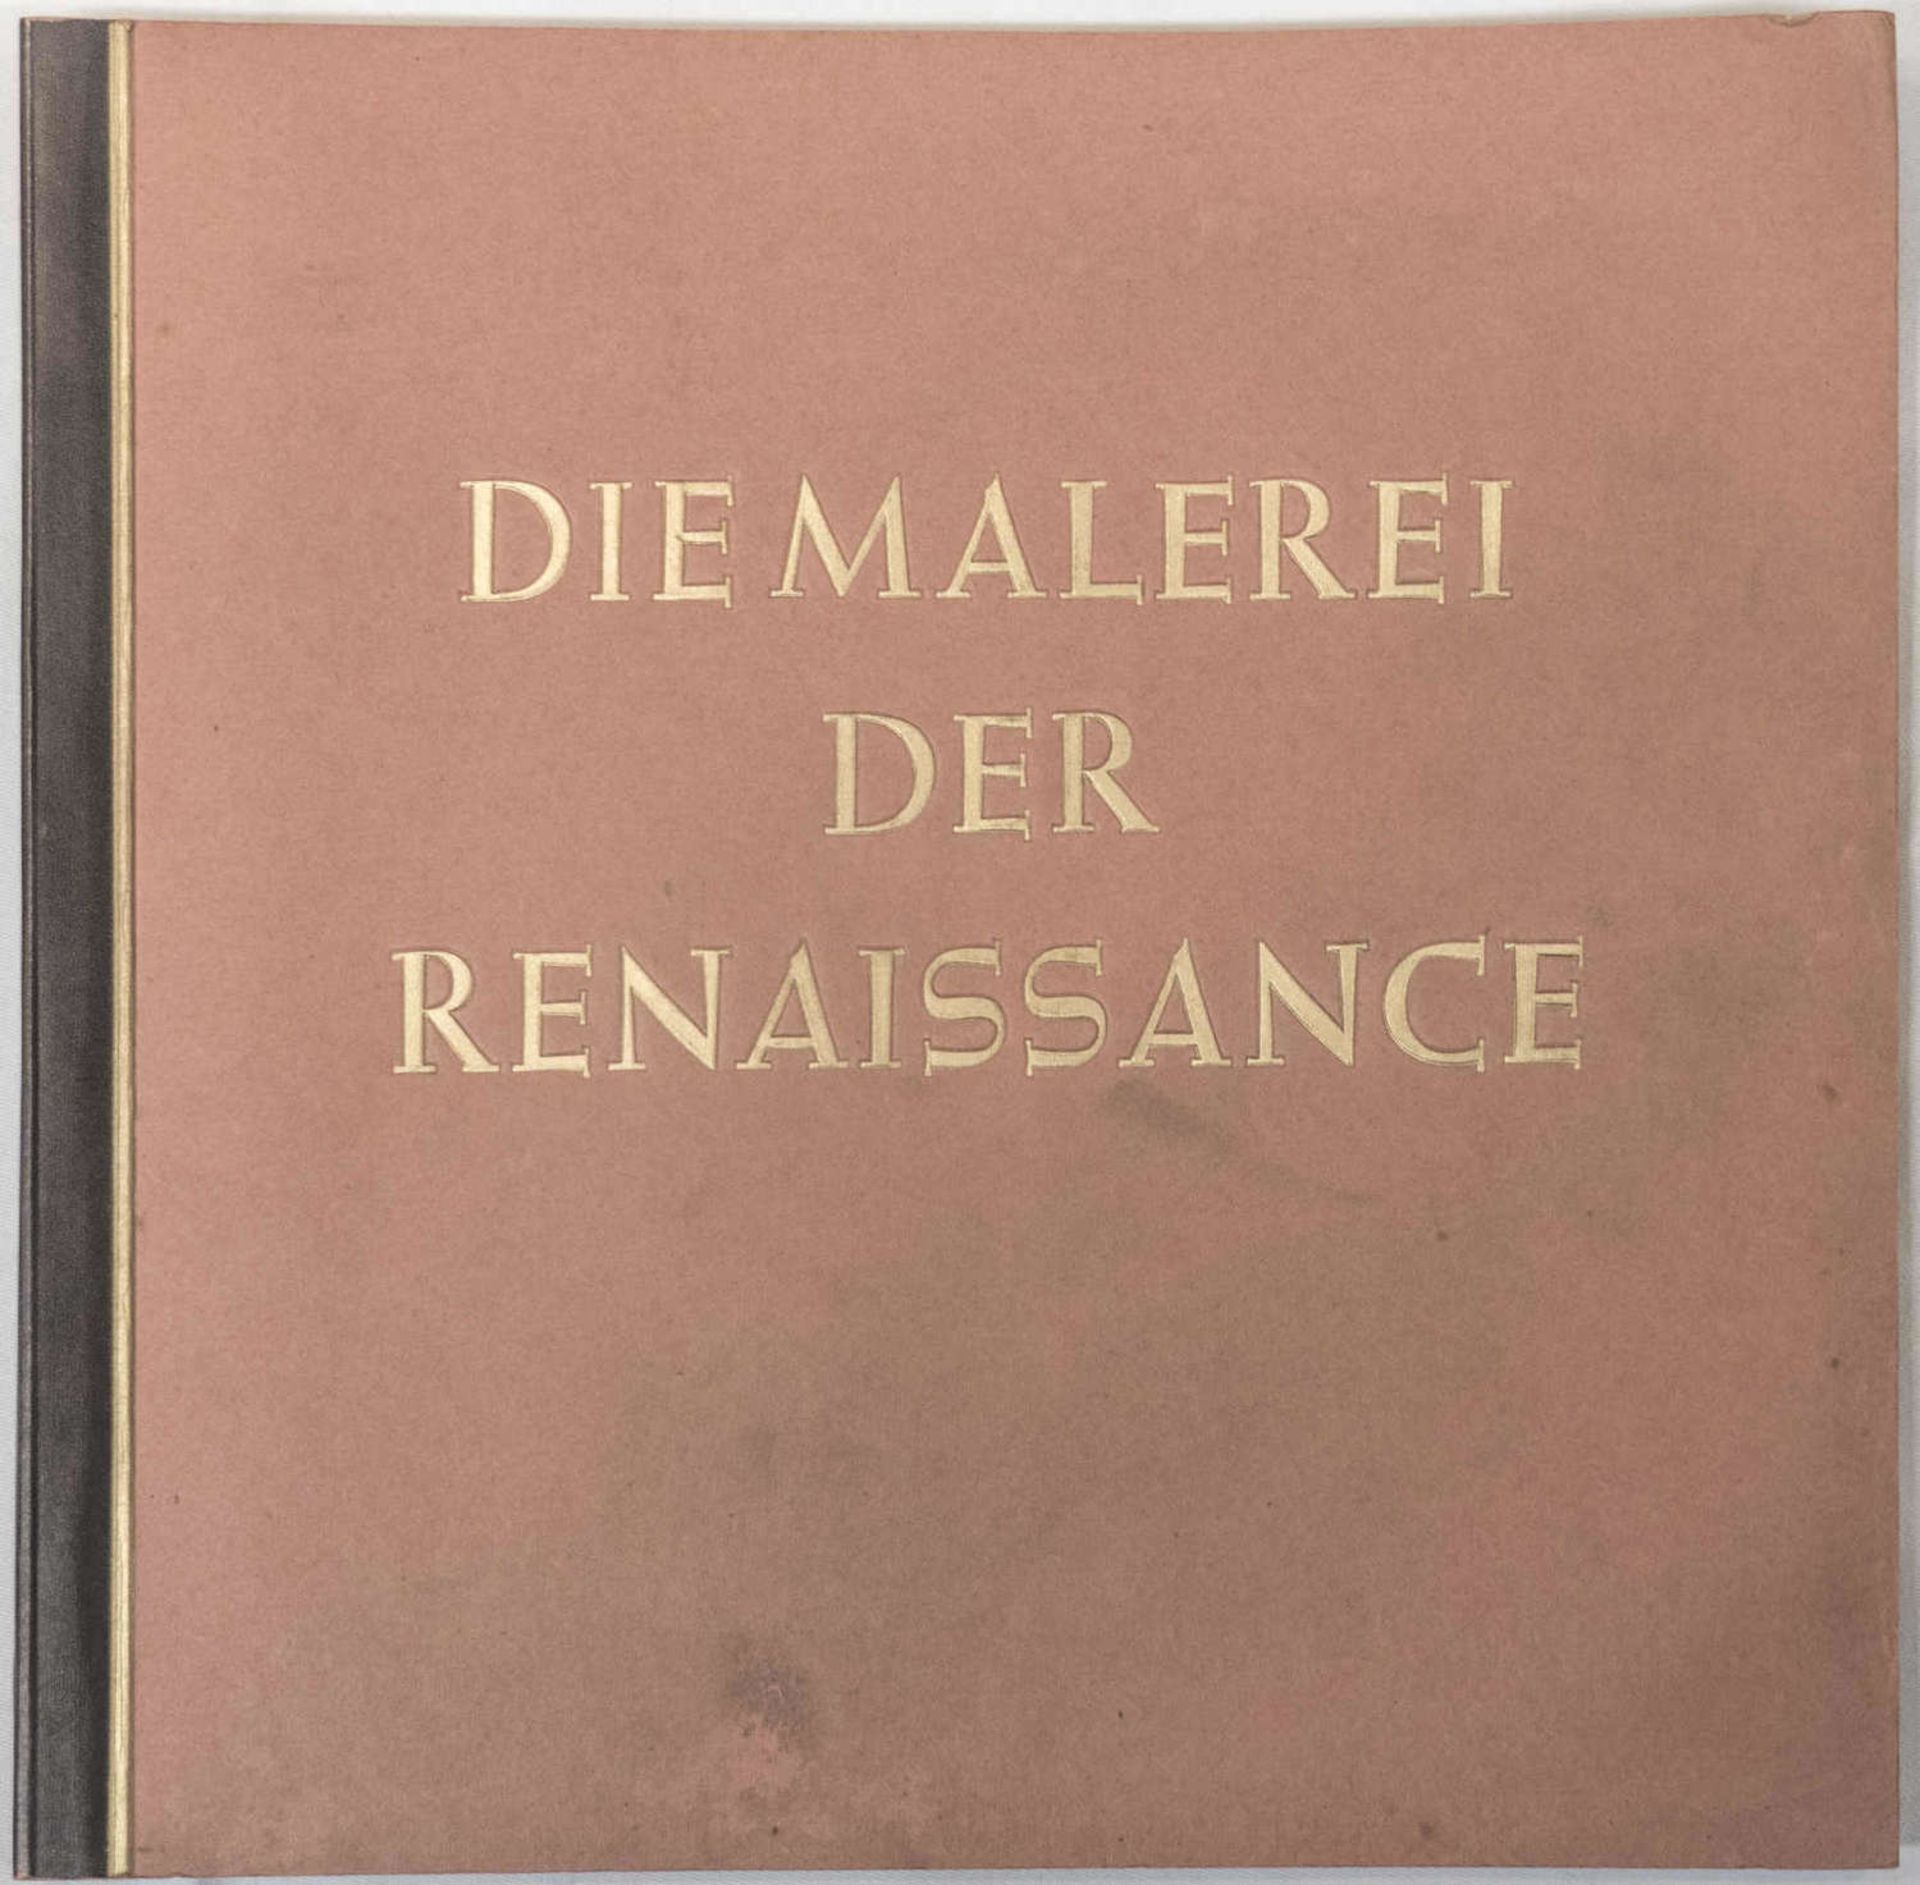 Sammelbilder - Album "Die Malerei der Renaissance". Herausgegeben vom Cigaretten - Bilderdienst